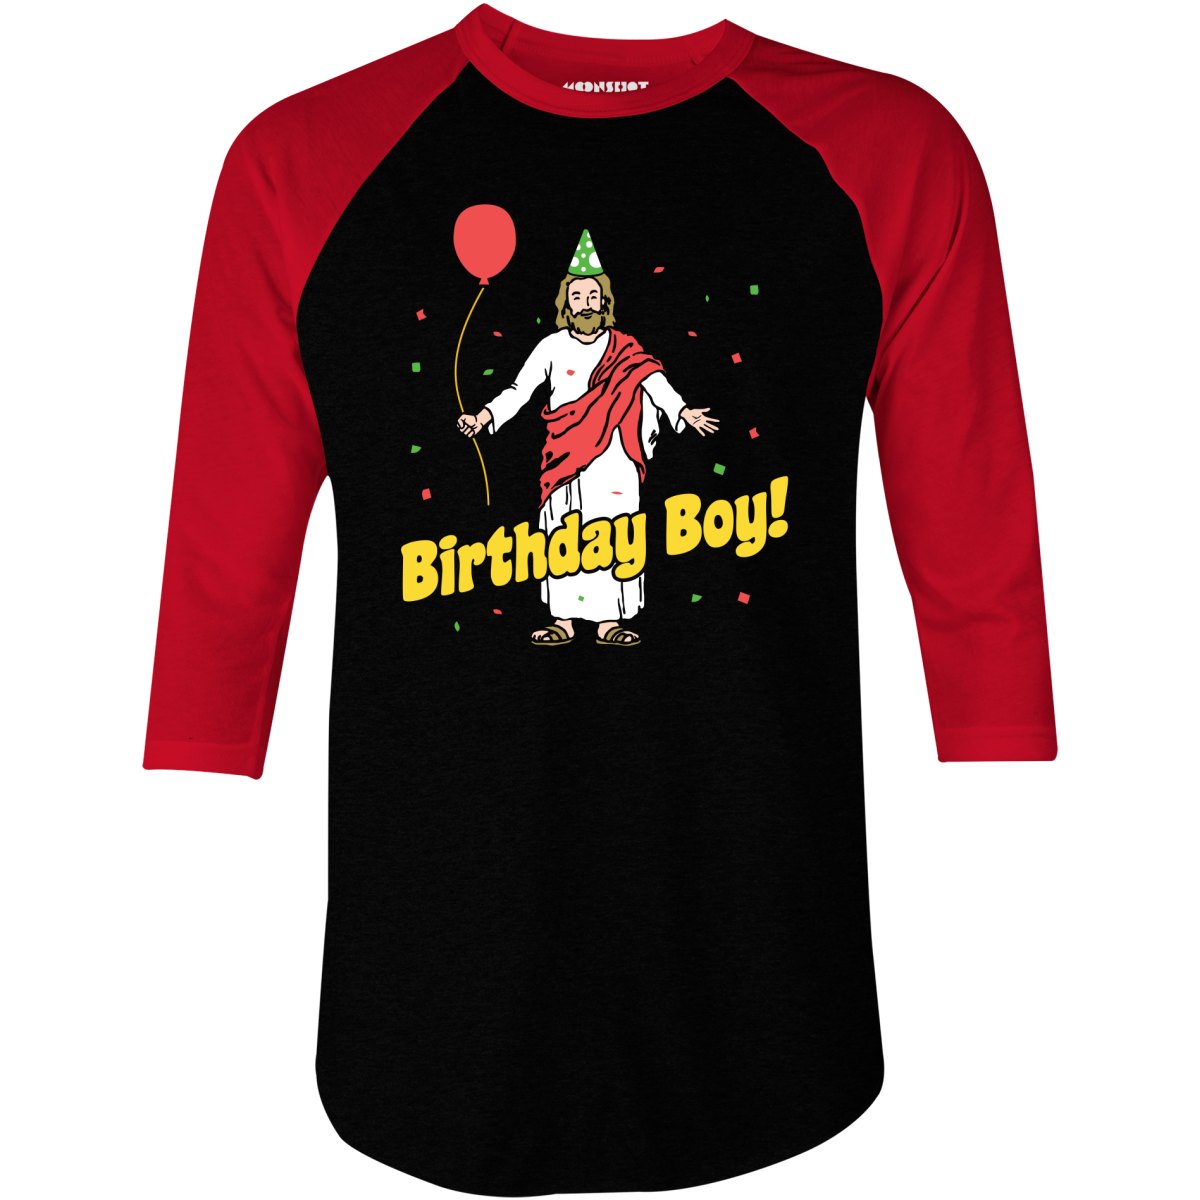 Birthday Boy - 3/4 Sleeve Raglan T-Shirt